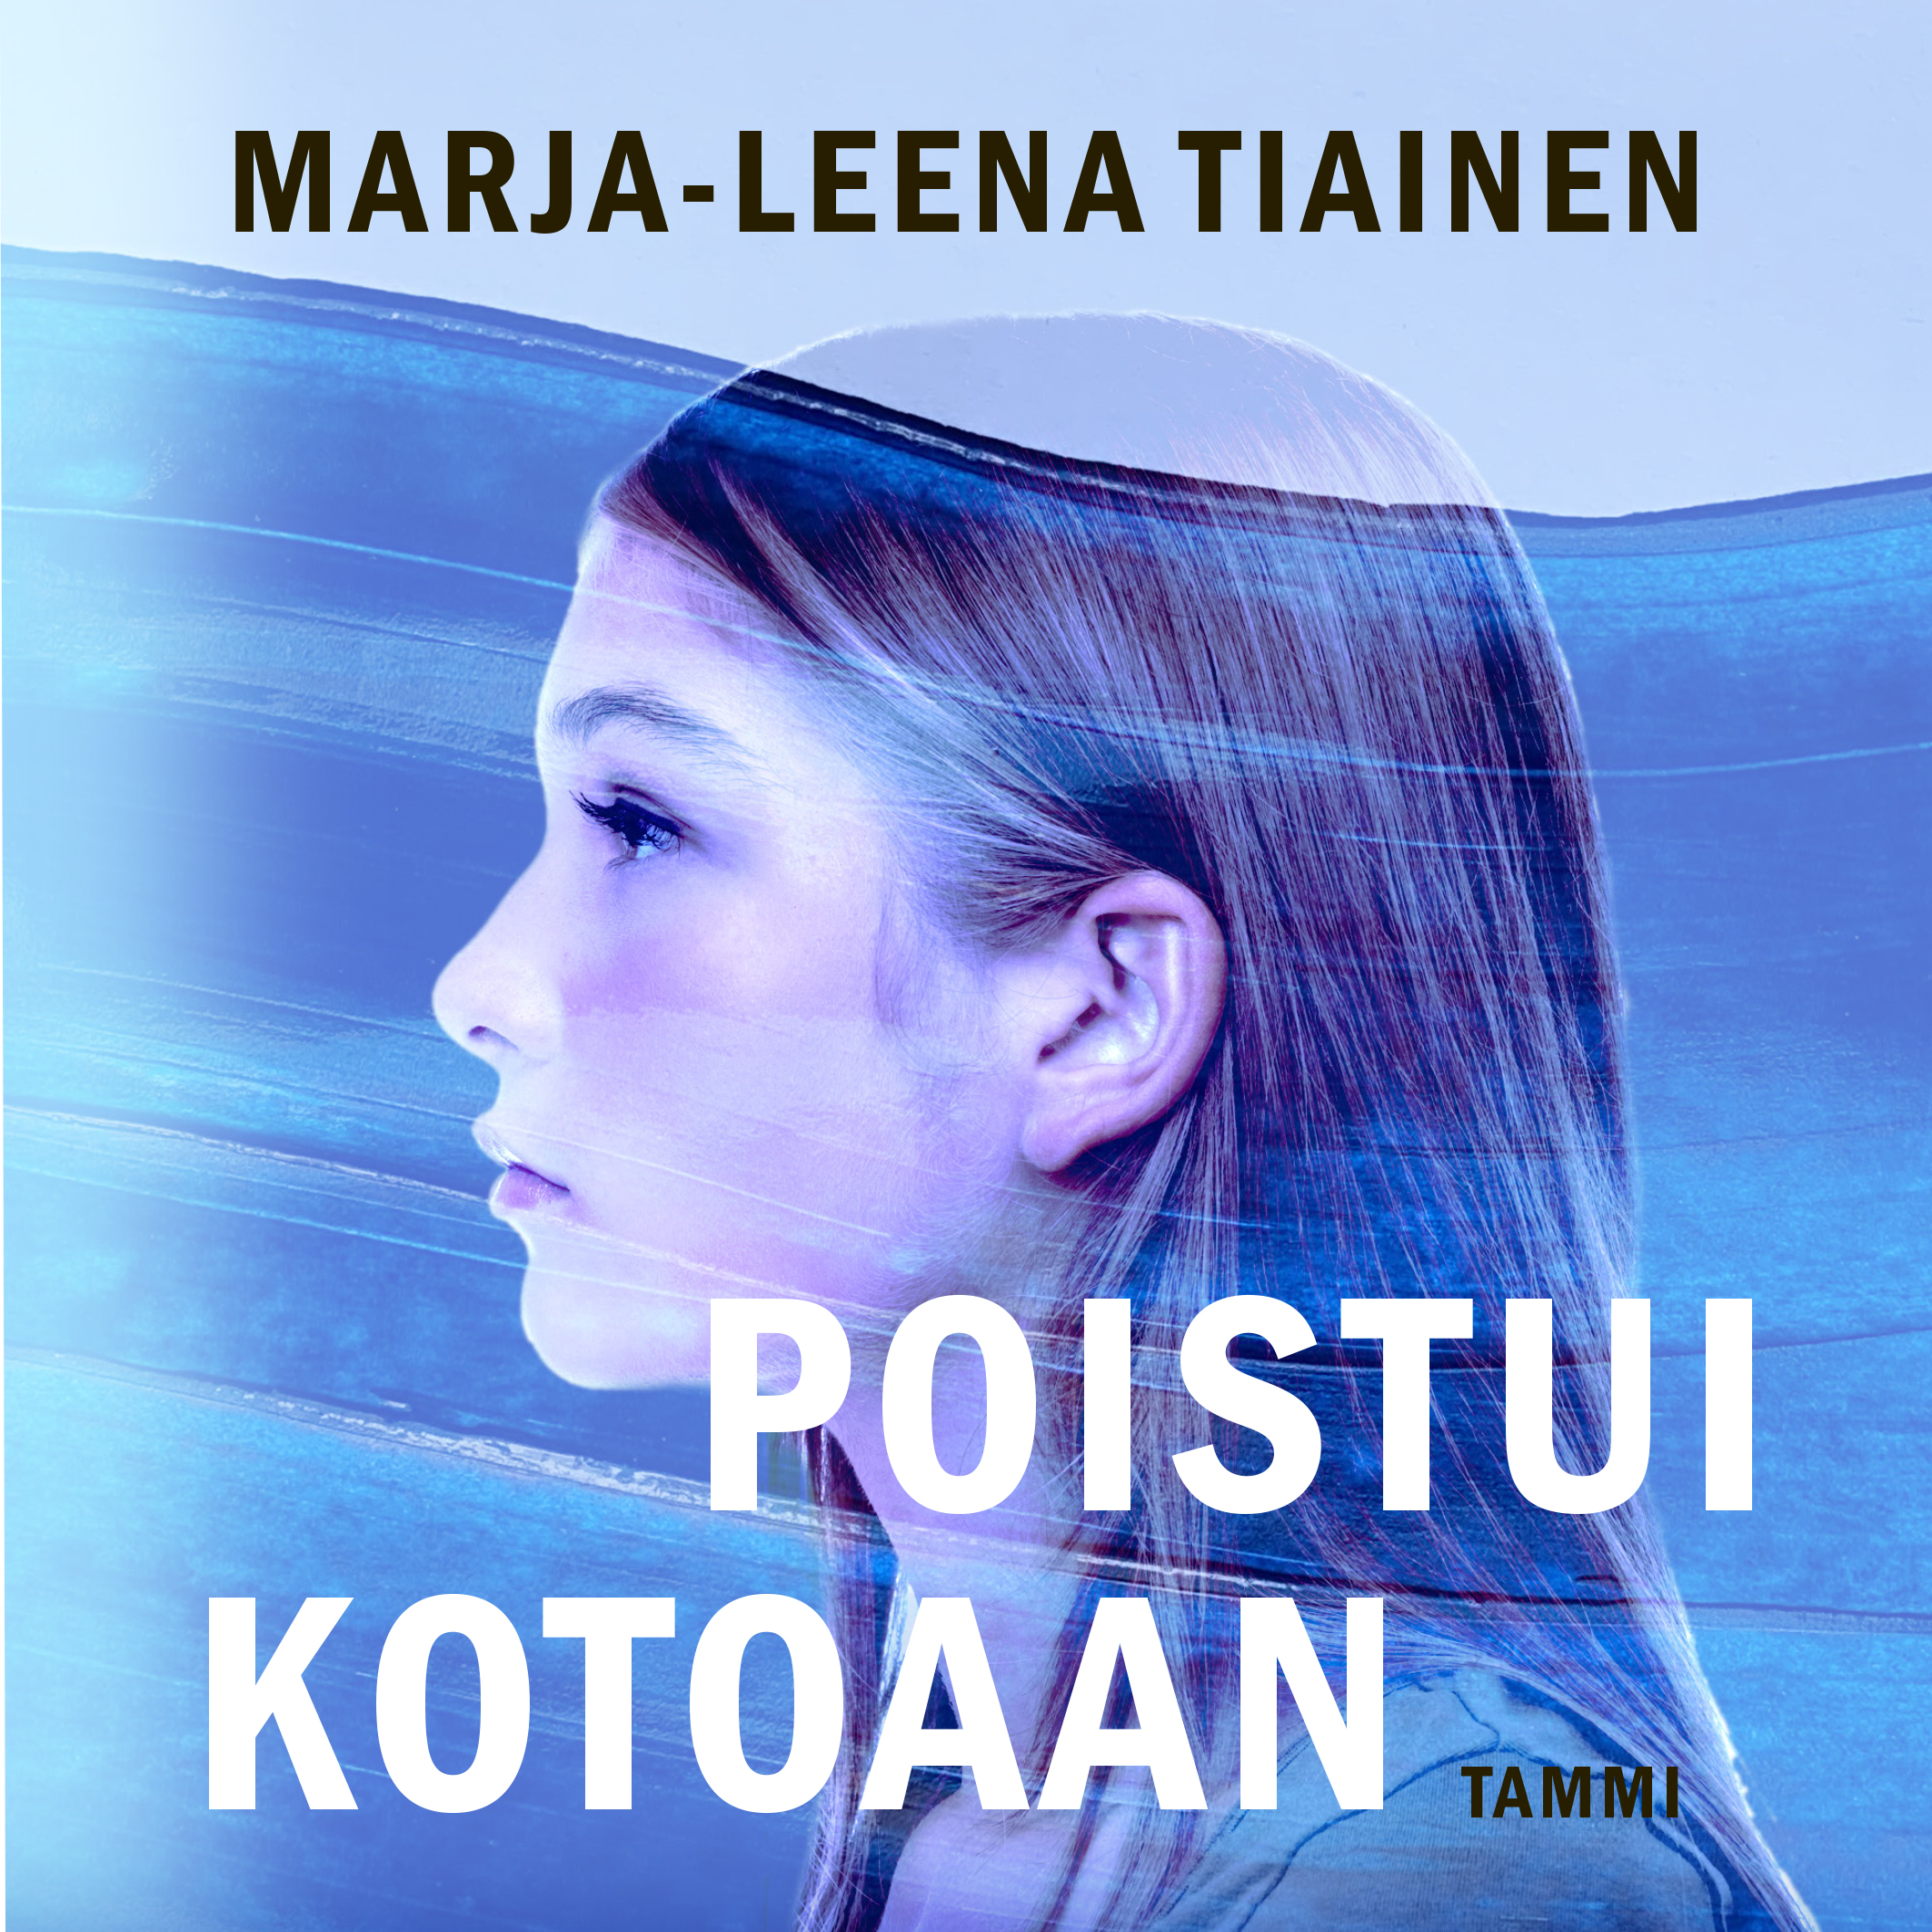 Tiainen, Marja-Leena - Poistui kotoaan, äänikirja